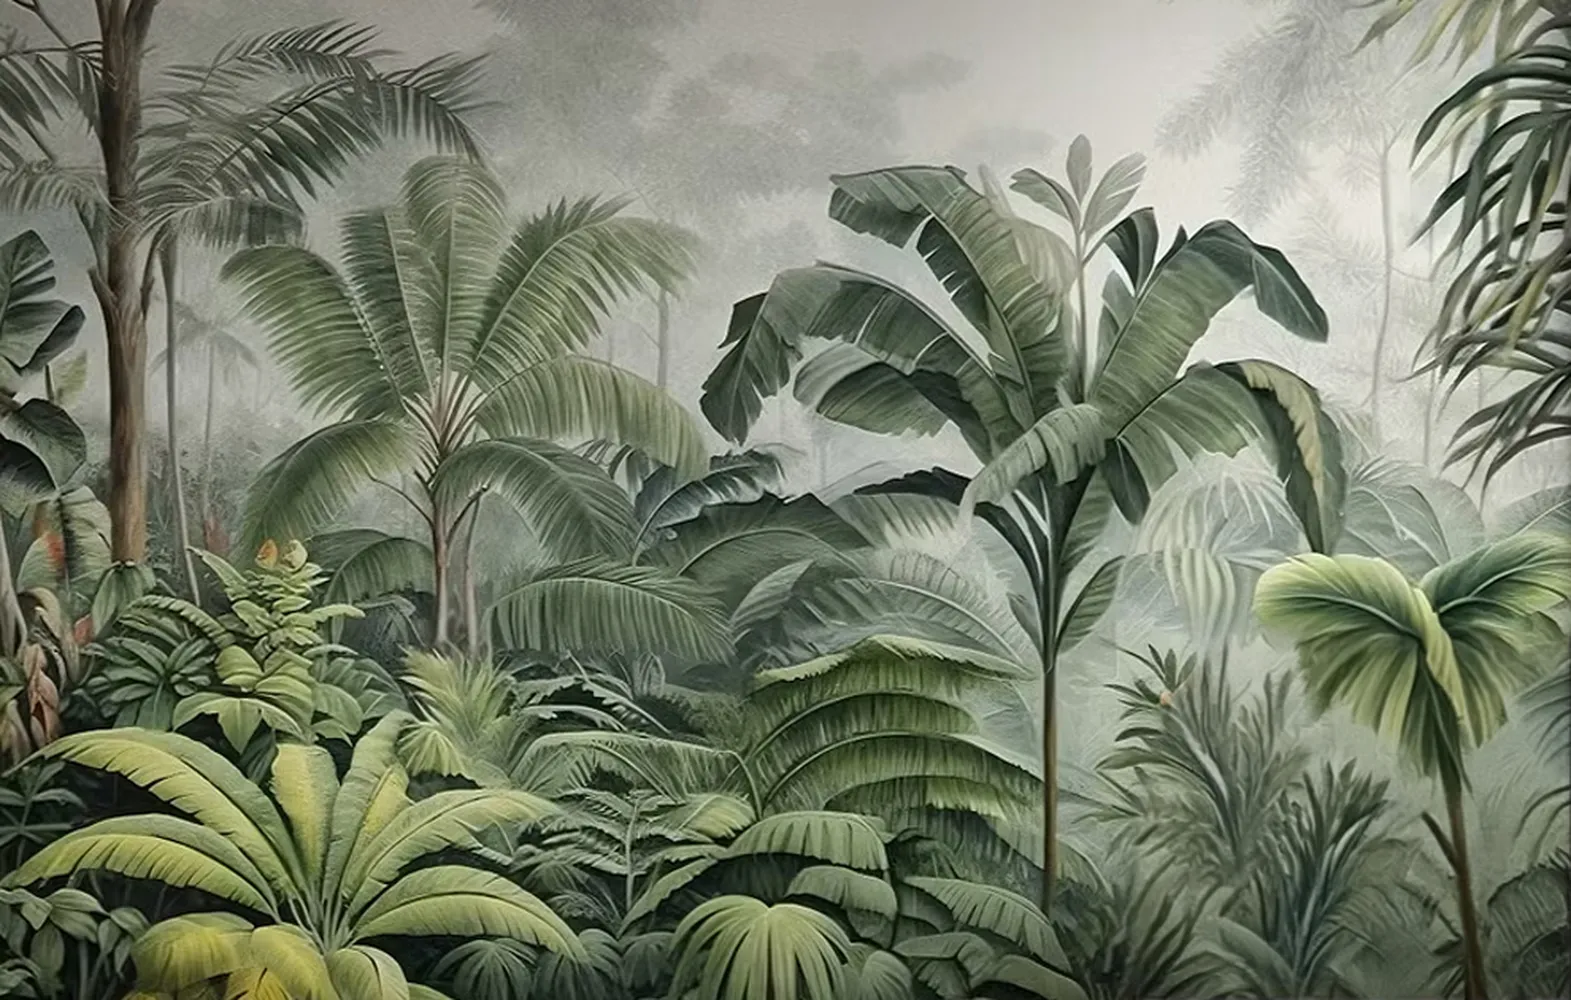 پوستر 3 بعدی طرح گیاهان جنگلی